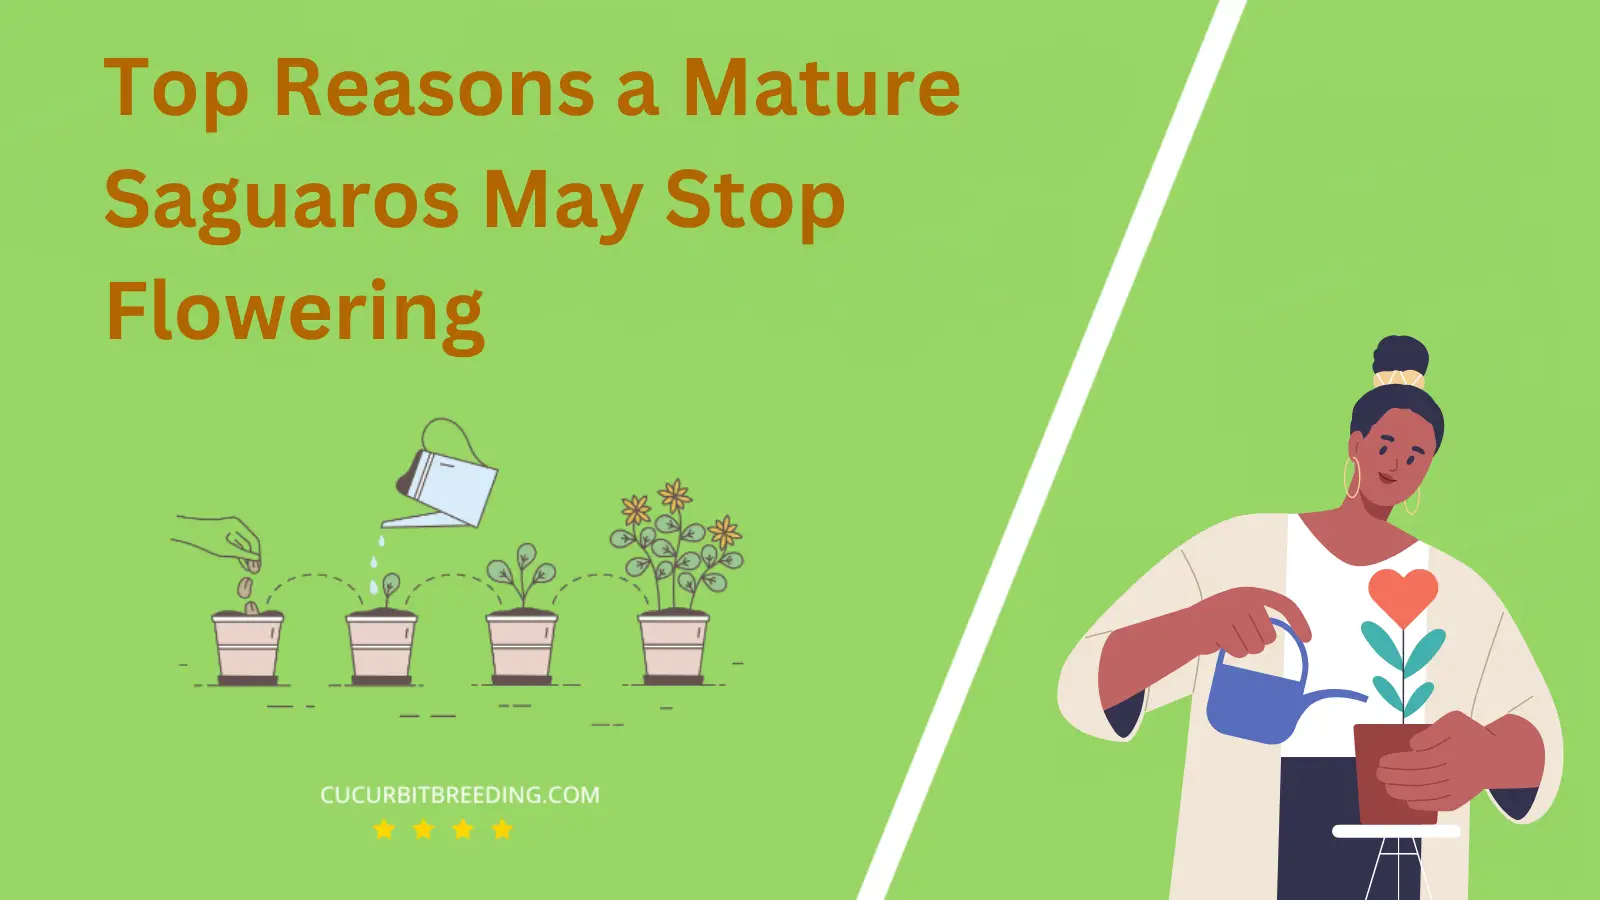 Top Reasons a Mature Saguaros May Stop Flowering